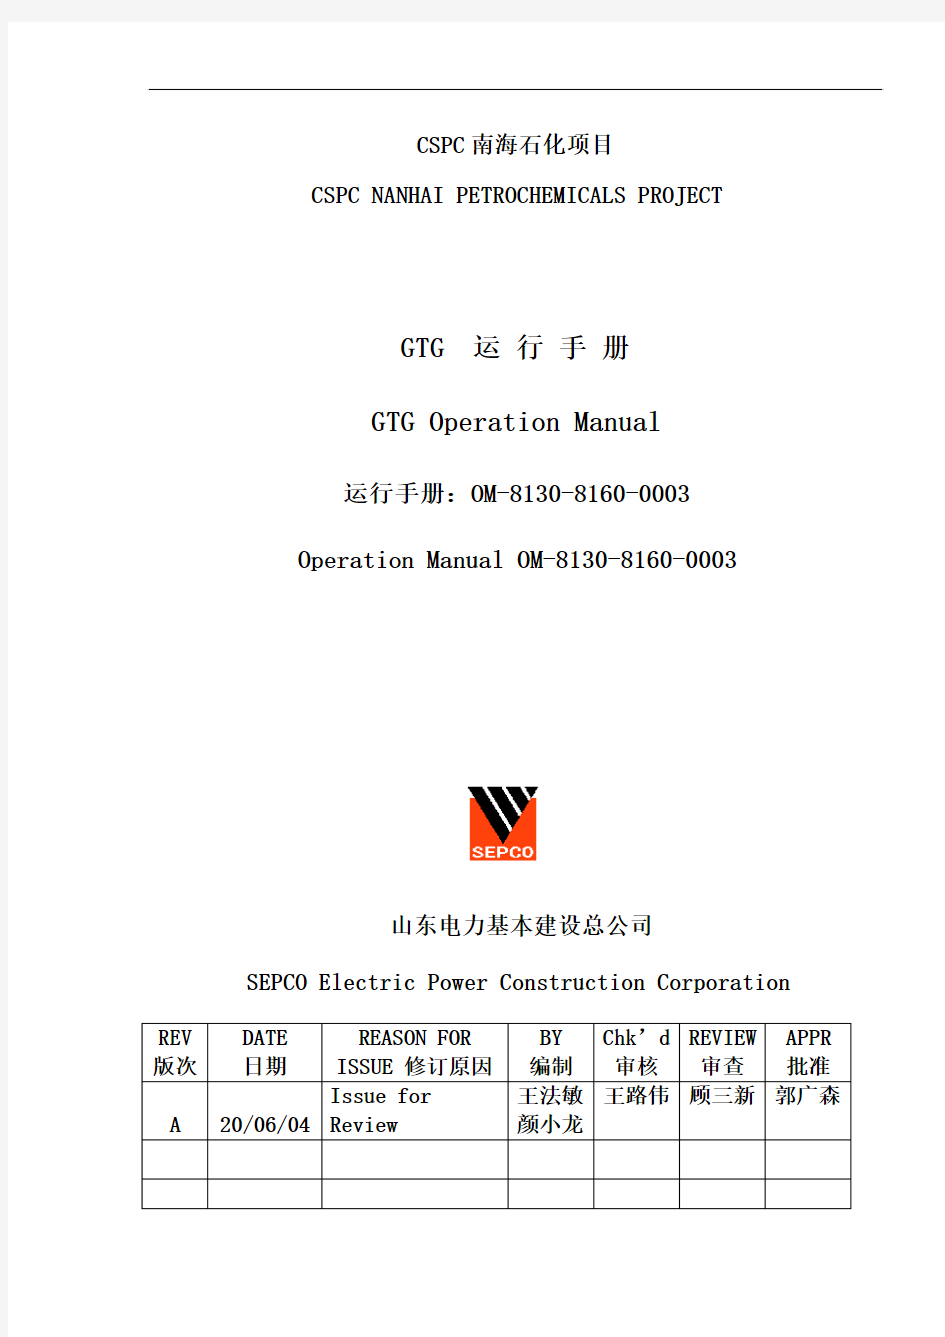 燃气轮机运行手册-中英文-提交07-27.